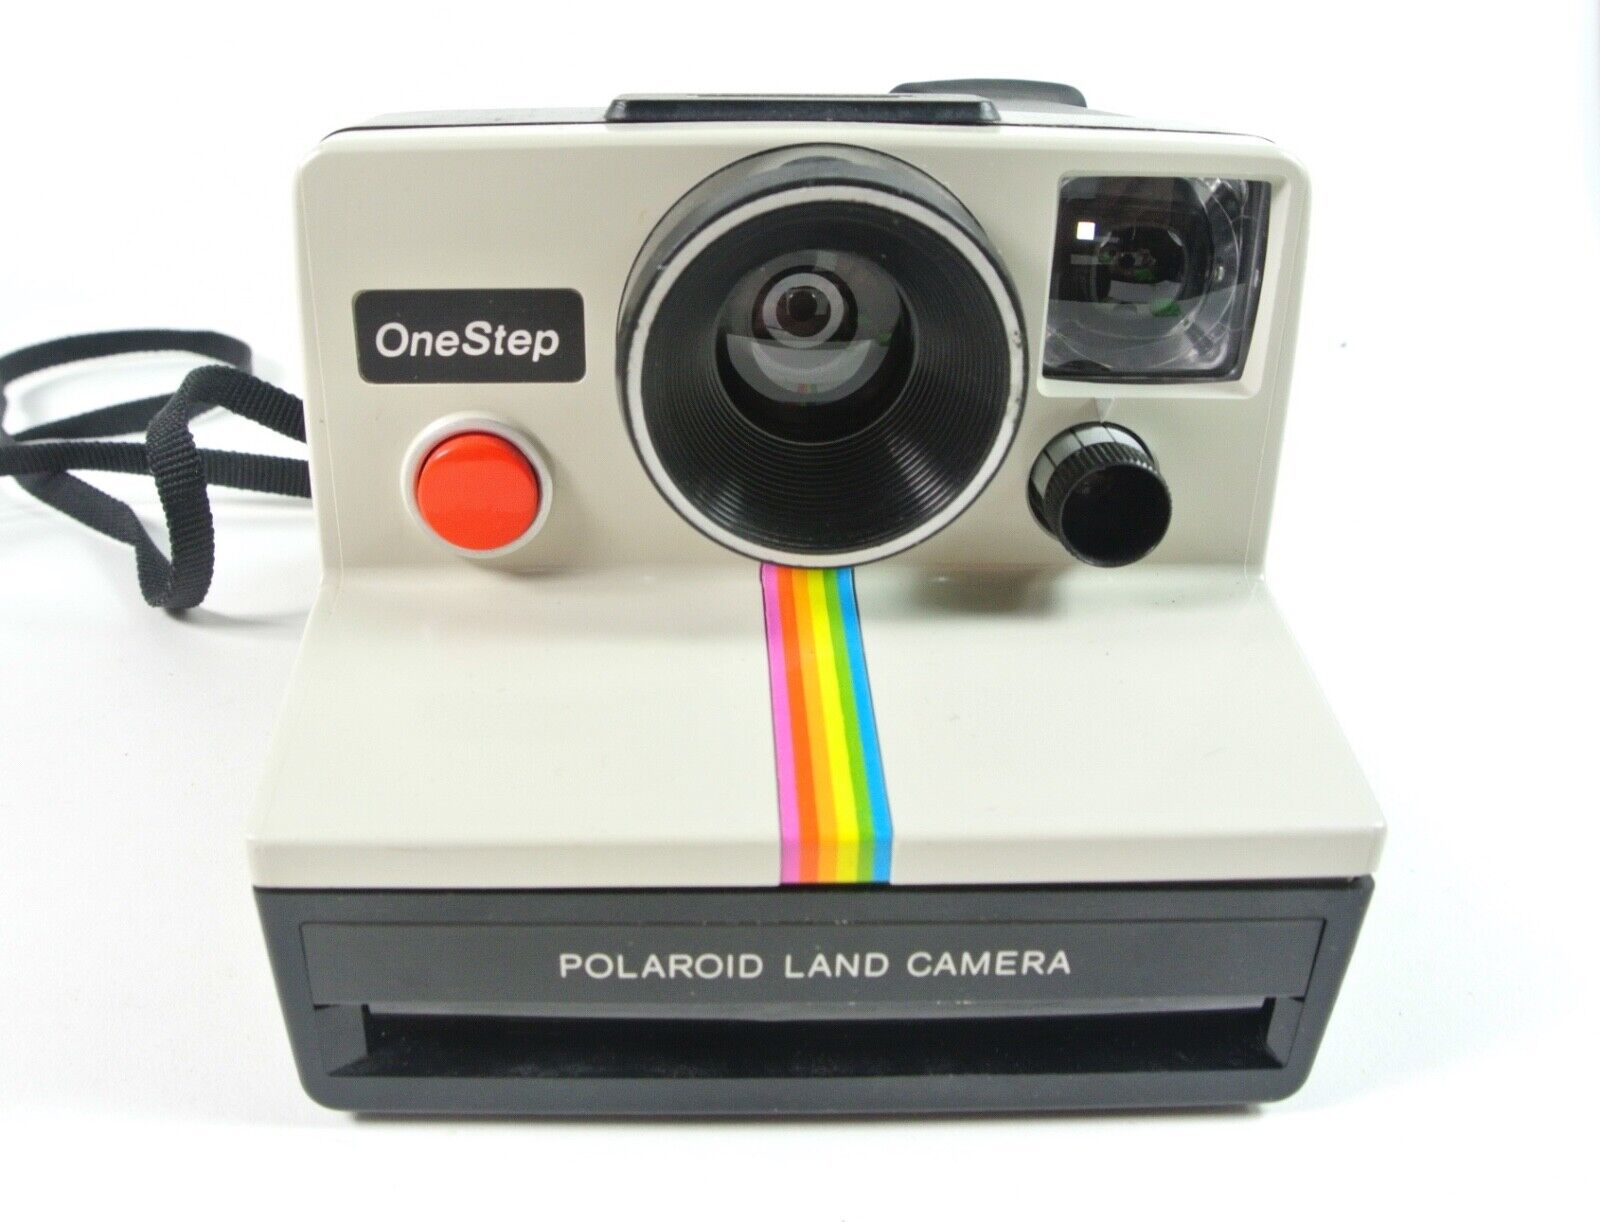 lanzar partes Cambiable DE COLECCIÓN Polaroid SX-70 arco iris cámara terrestre instantánea probada  ¡funciona en muy buen estado!¡! | eBay